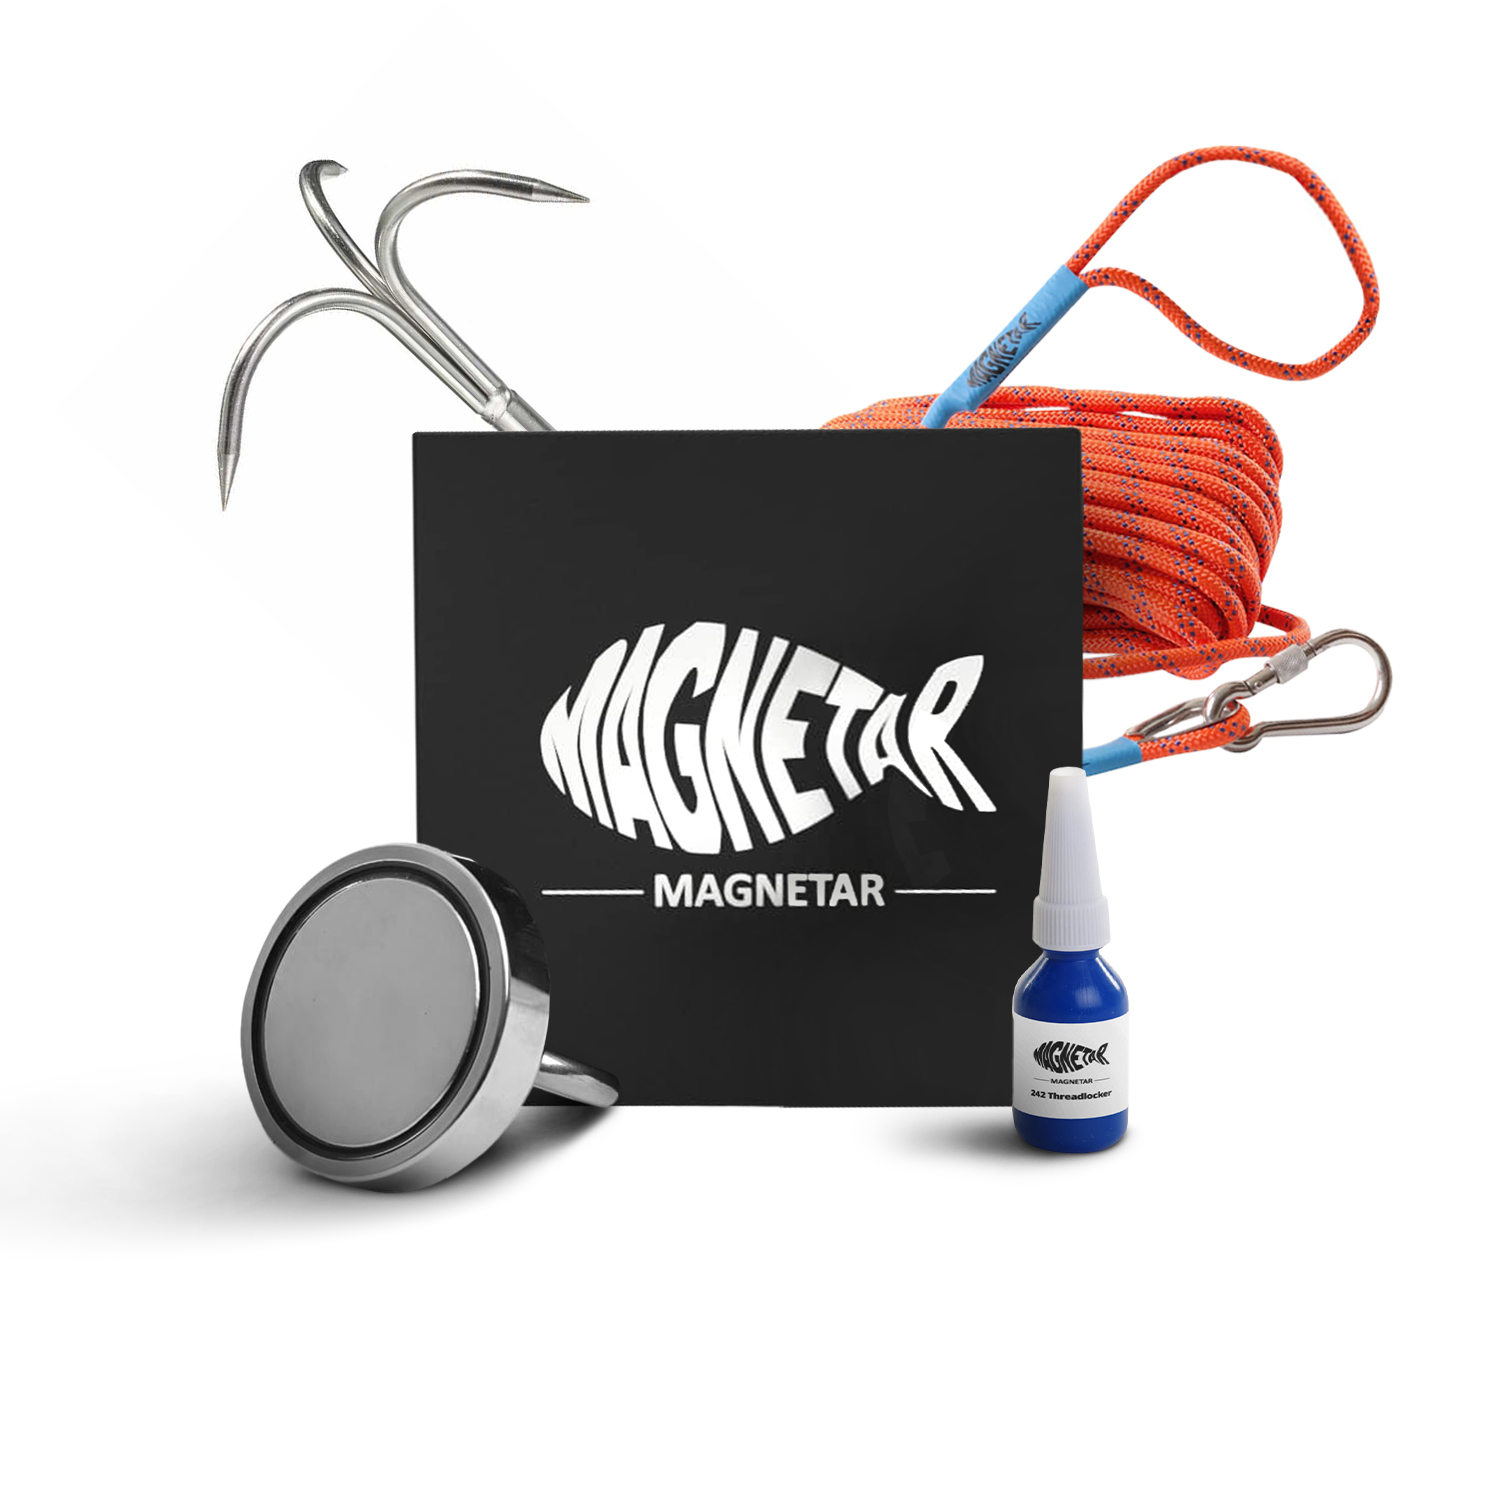 Bergemagnet Set mit Seil Magnetangeln 160Kg bis 1200Kg Stark Neodym  Ösenmagnet